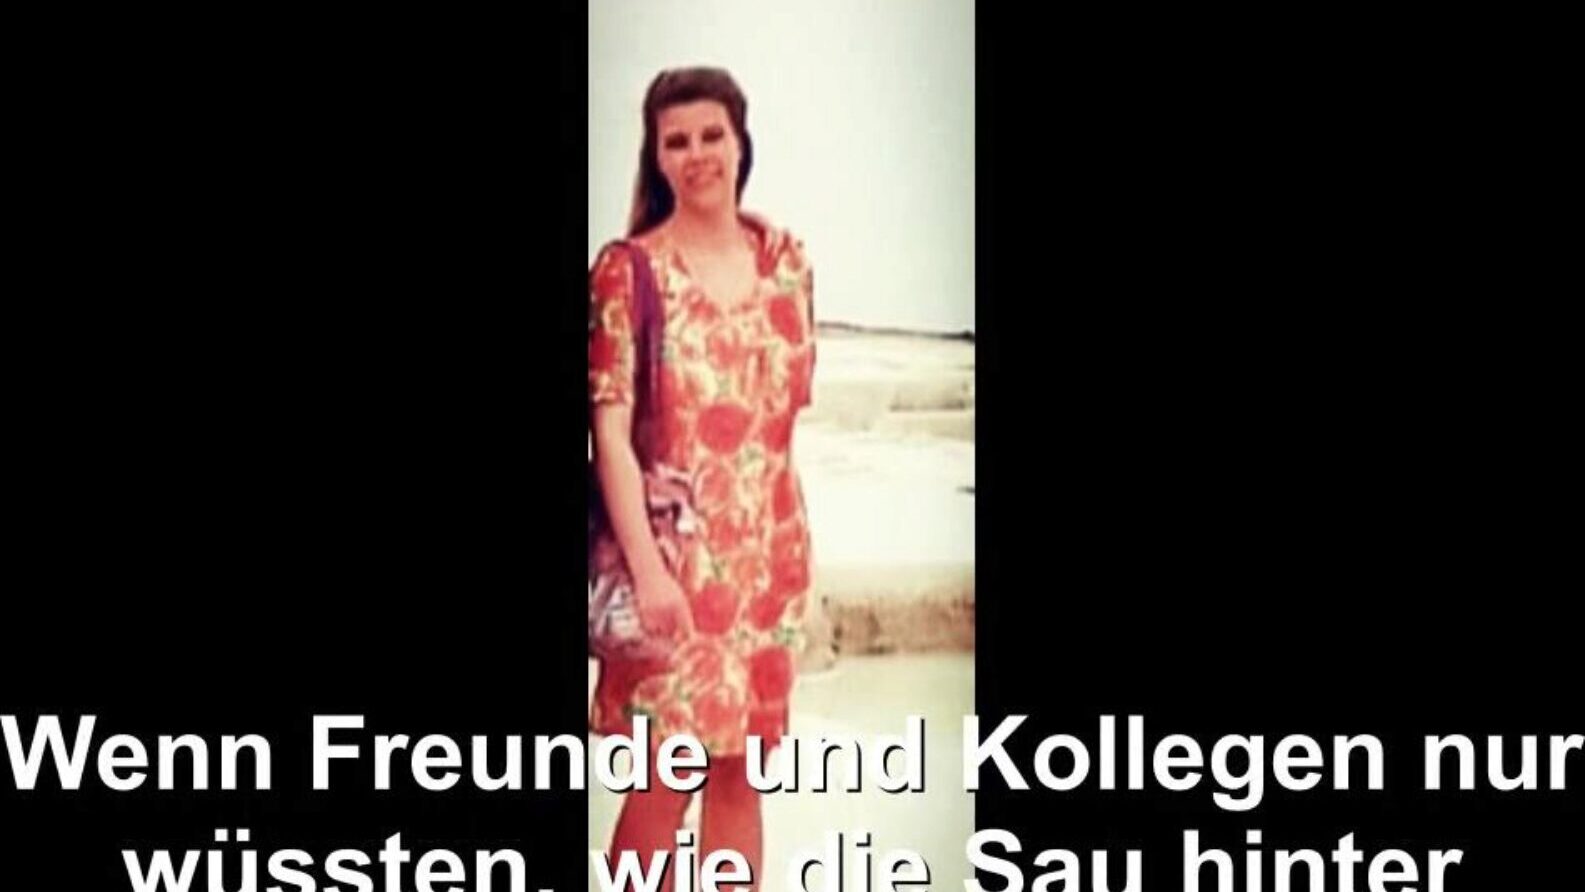 dona de casa alemã exposta, tubo livre alemão hd pornô bd assista a cena de filme exposta de dona de casa alemã no xhamster, o maior site de tubo hd de sexo com toneladas de tubo gratuito alemão esposa alemã e cenas de filmes porno caseiros